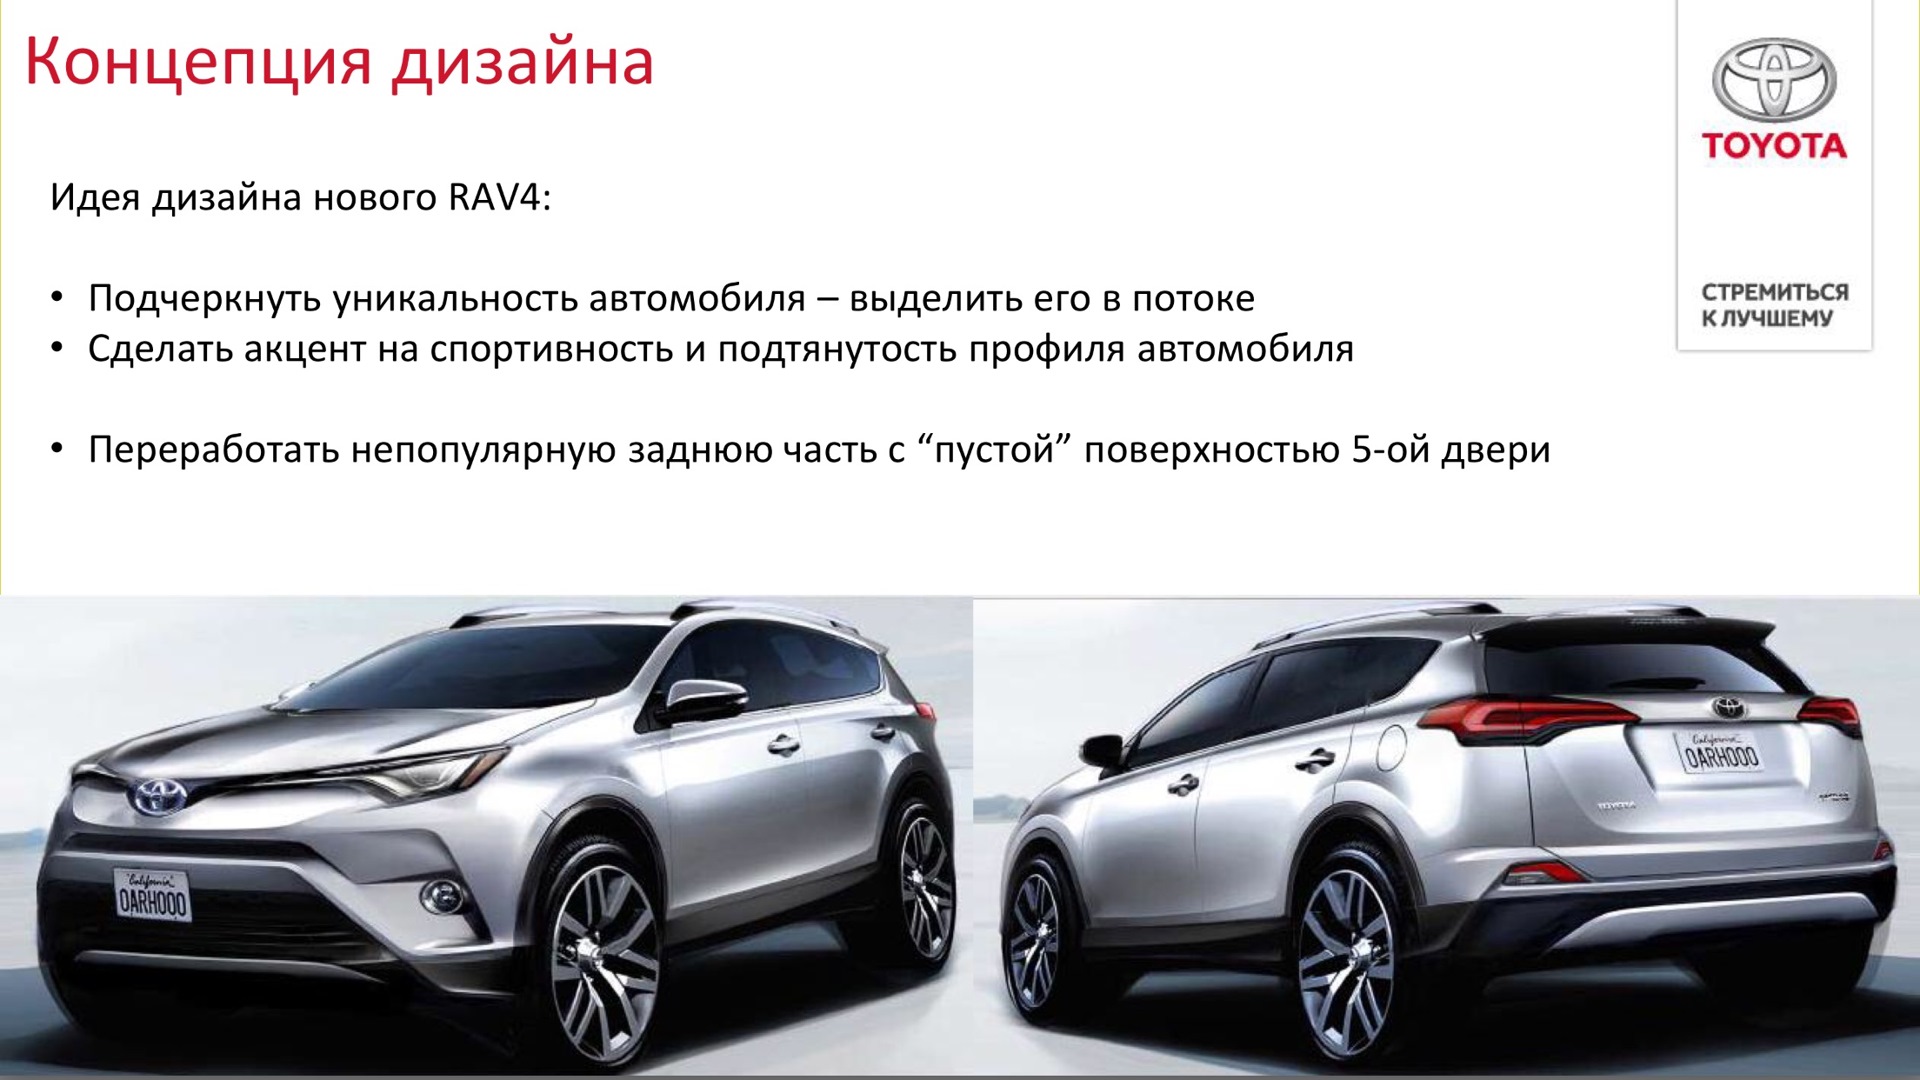 Расход топлива рав. Название элементов дизайна на Тойота рав 4 2014 года. Презентация абсолютно нового rav4 Архангельск.